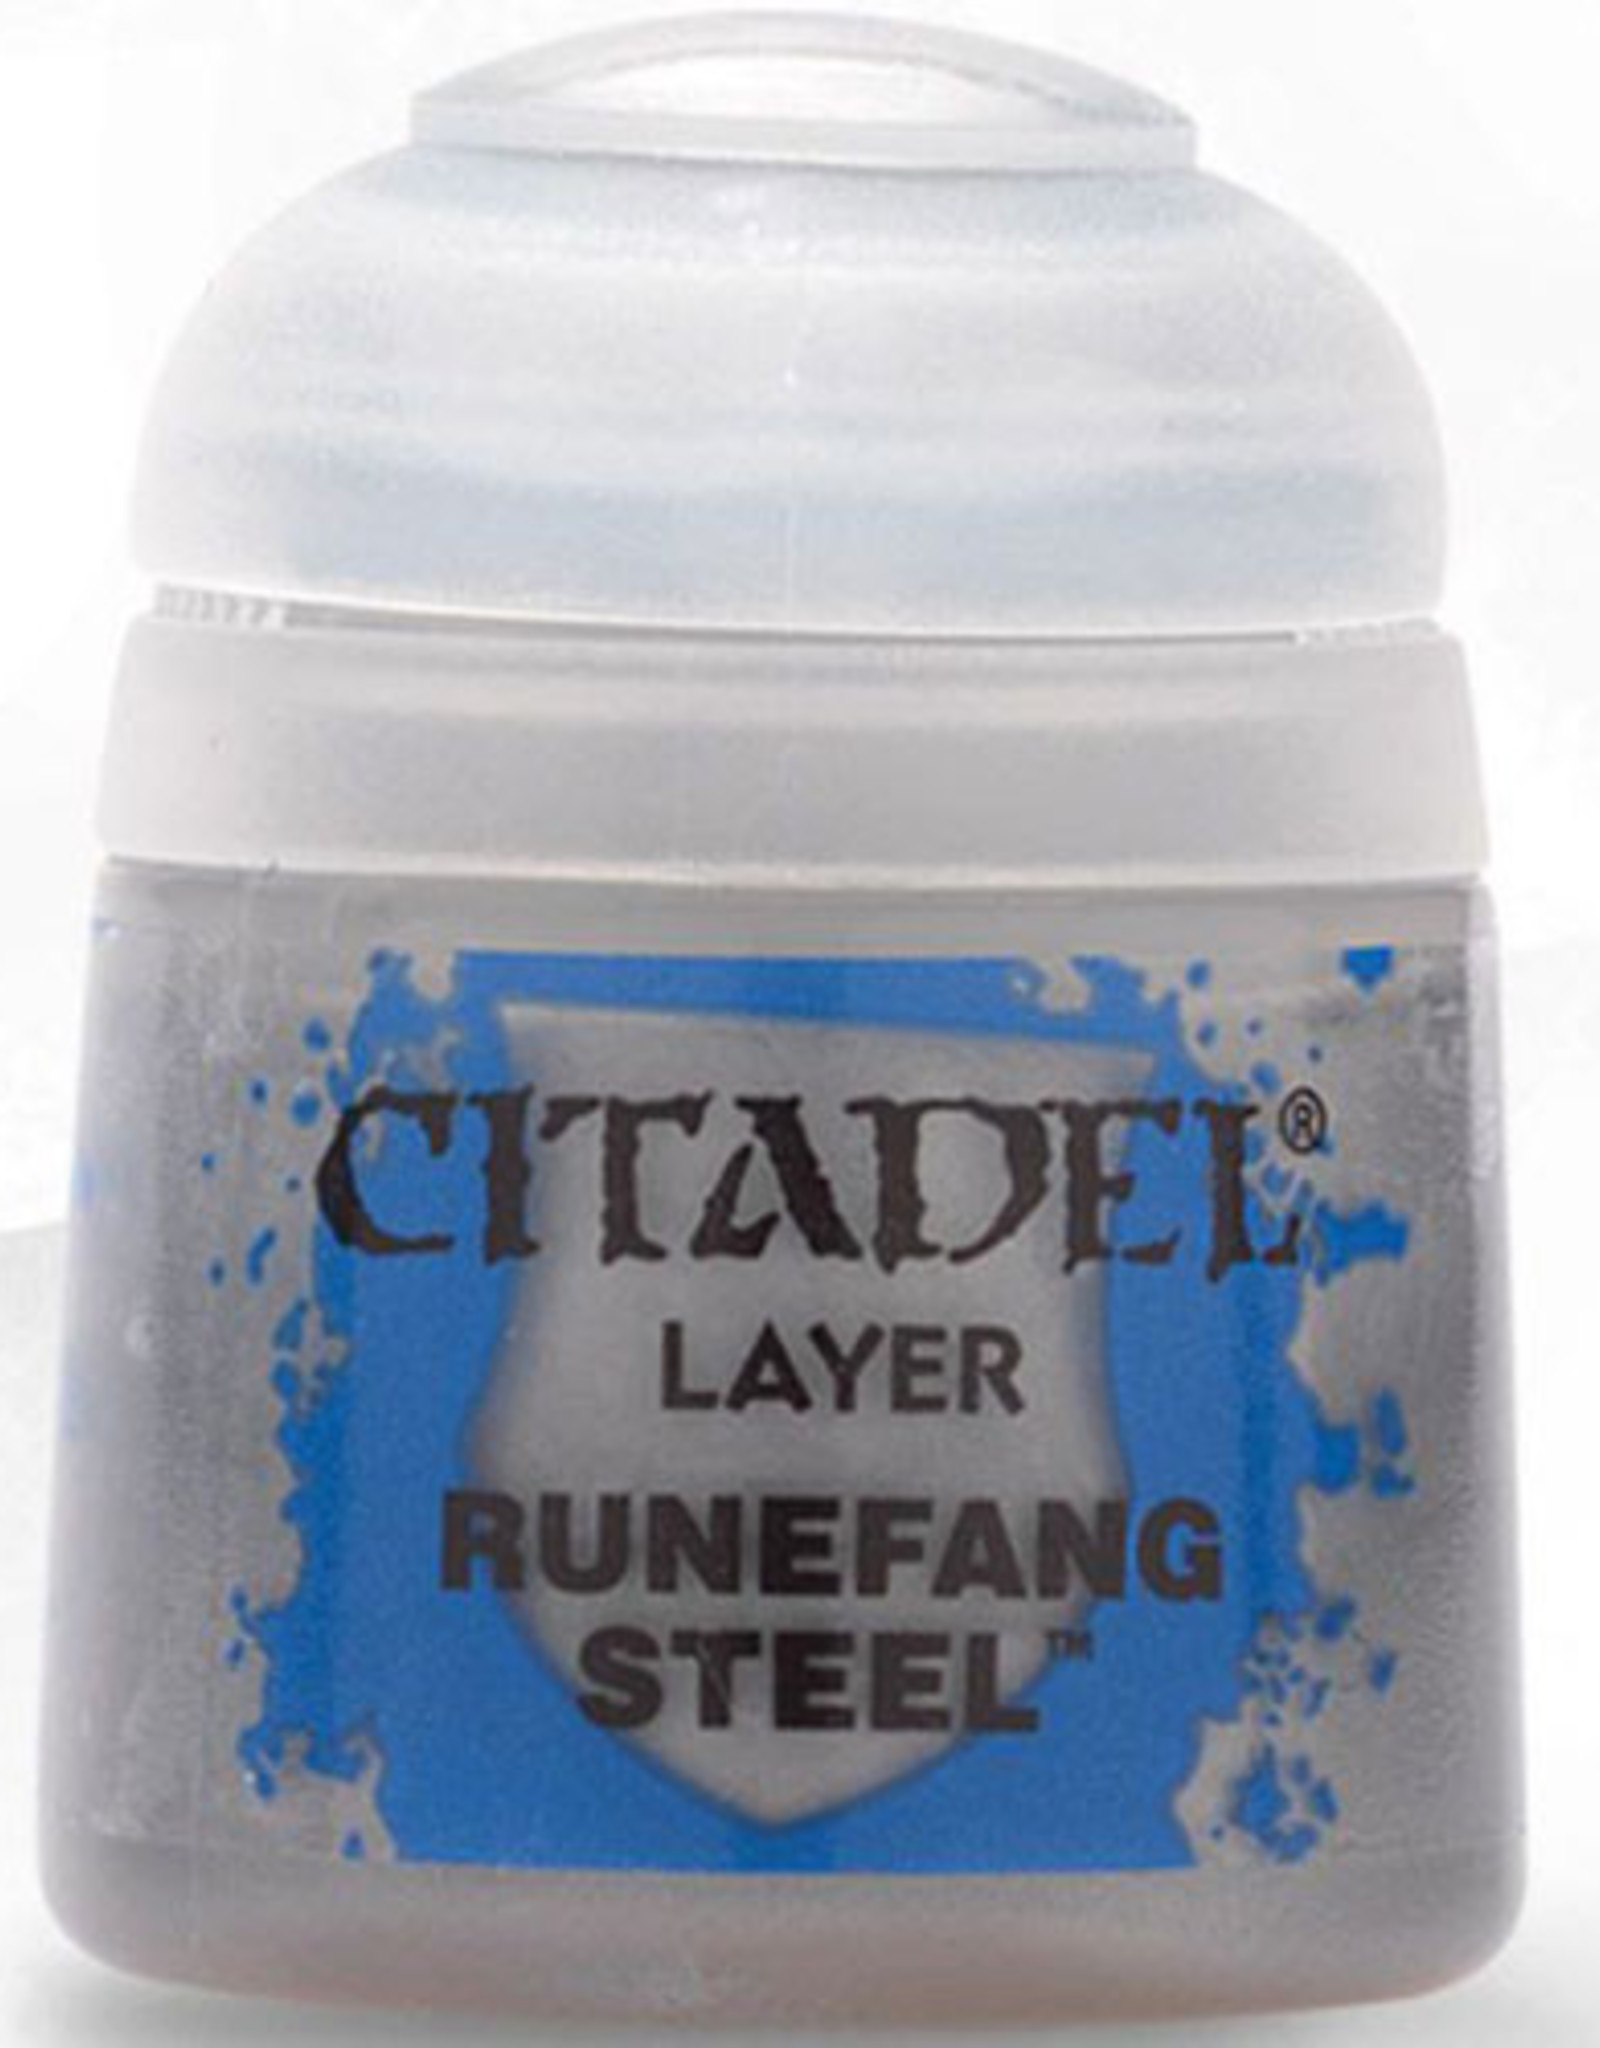 Games Workshop Citadel Layer: Runefang Steel